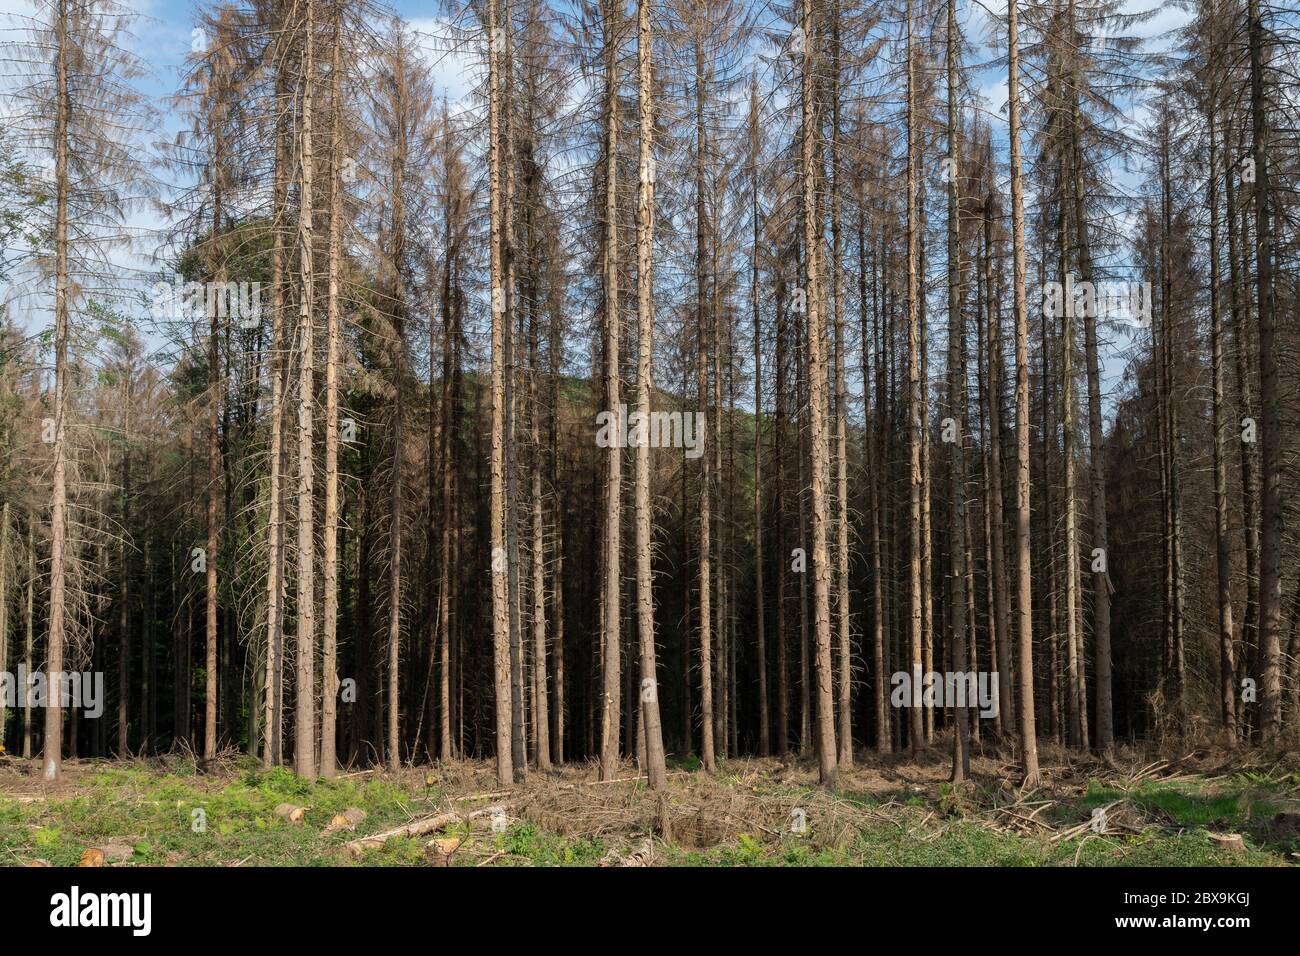 Dead spruces in a forest near Lindlar in the Bergisches Land | Abgestorbene Fichten in einem Wald bei Lindlar im bergischen Land | Stock Photo